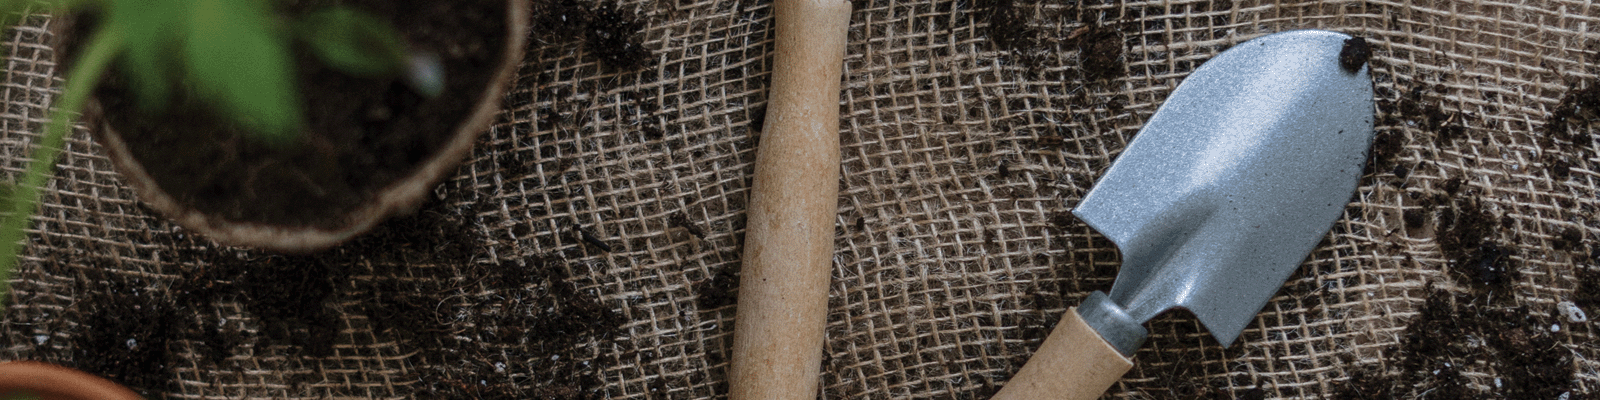 A trowel and a plant on hessian cloth